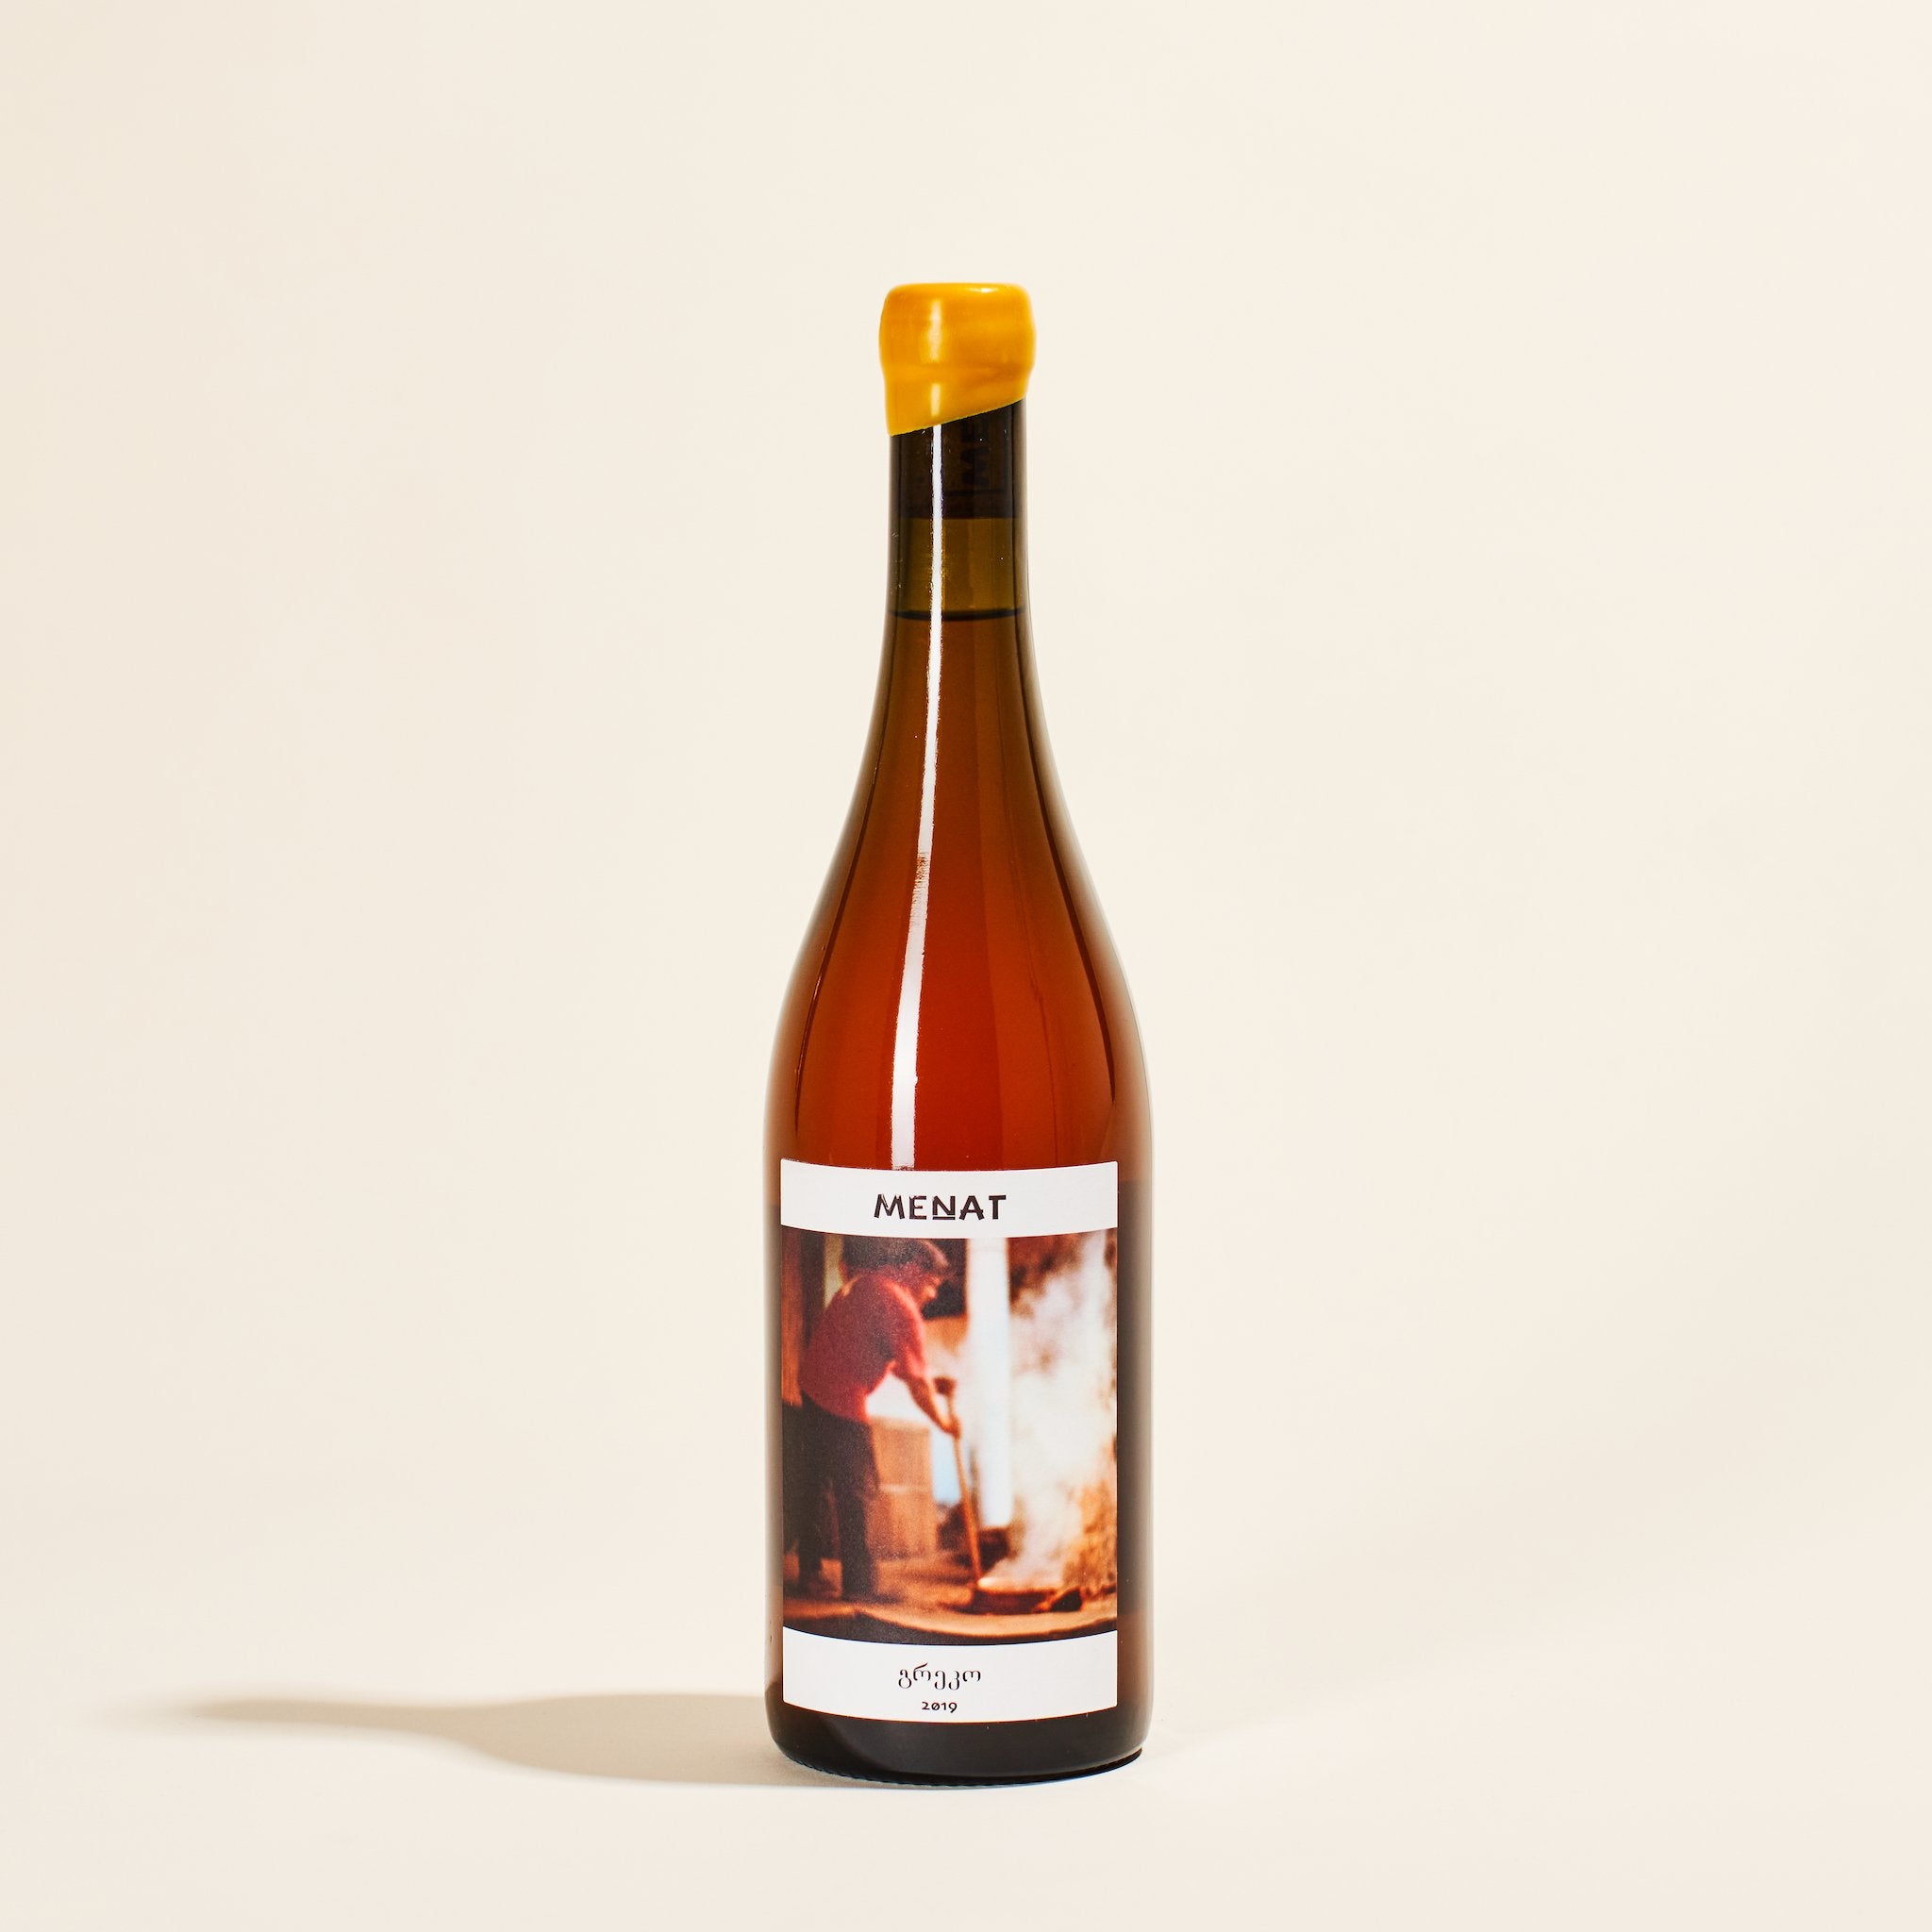 greko menat calabria italy natural orange wine